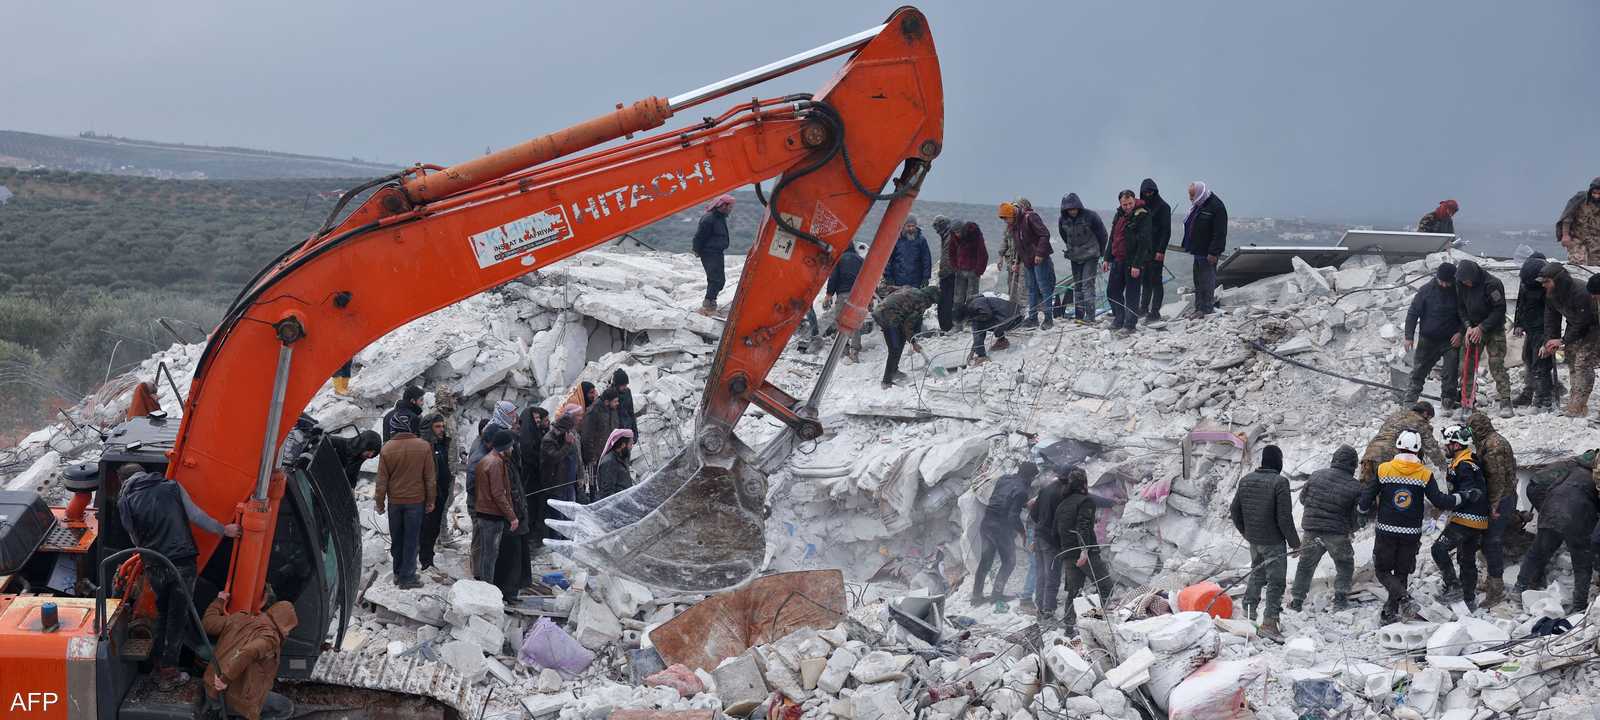 البحث مستمر عن الضحايا والناجين من الزلزال في سوريا